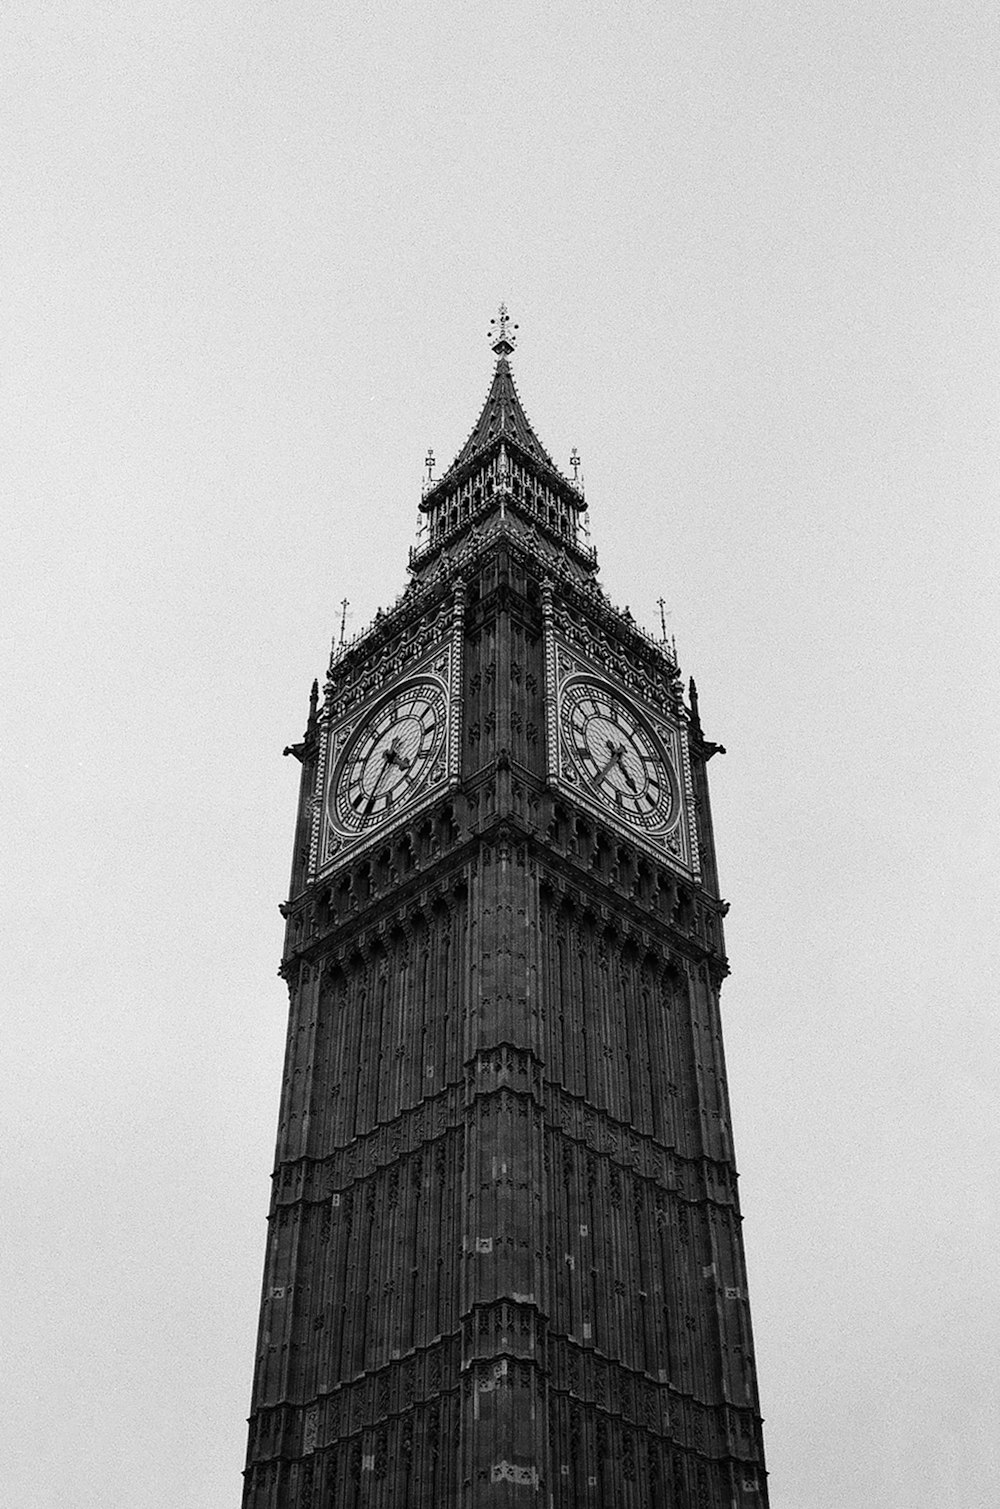 Una foto en blanco y negro de la torre del reloj del Big Ben